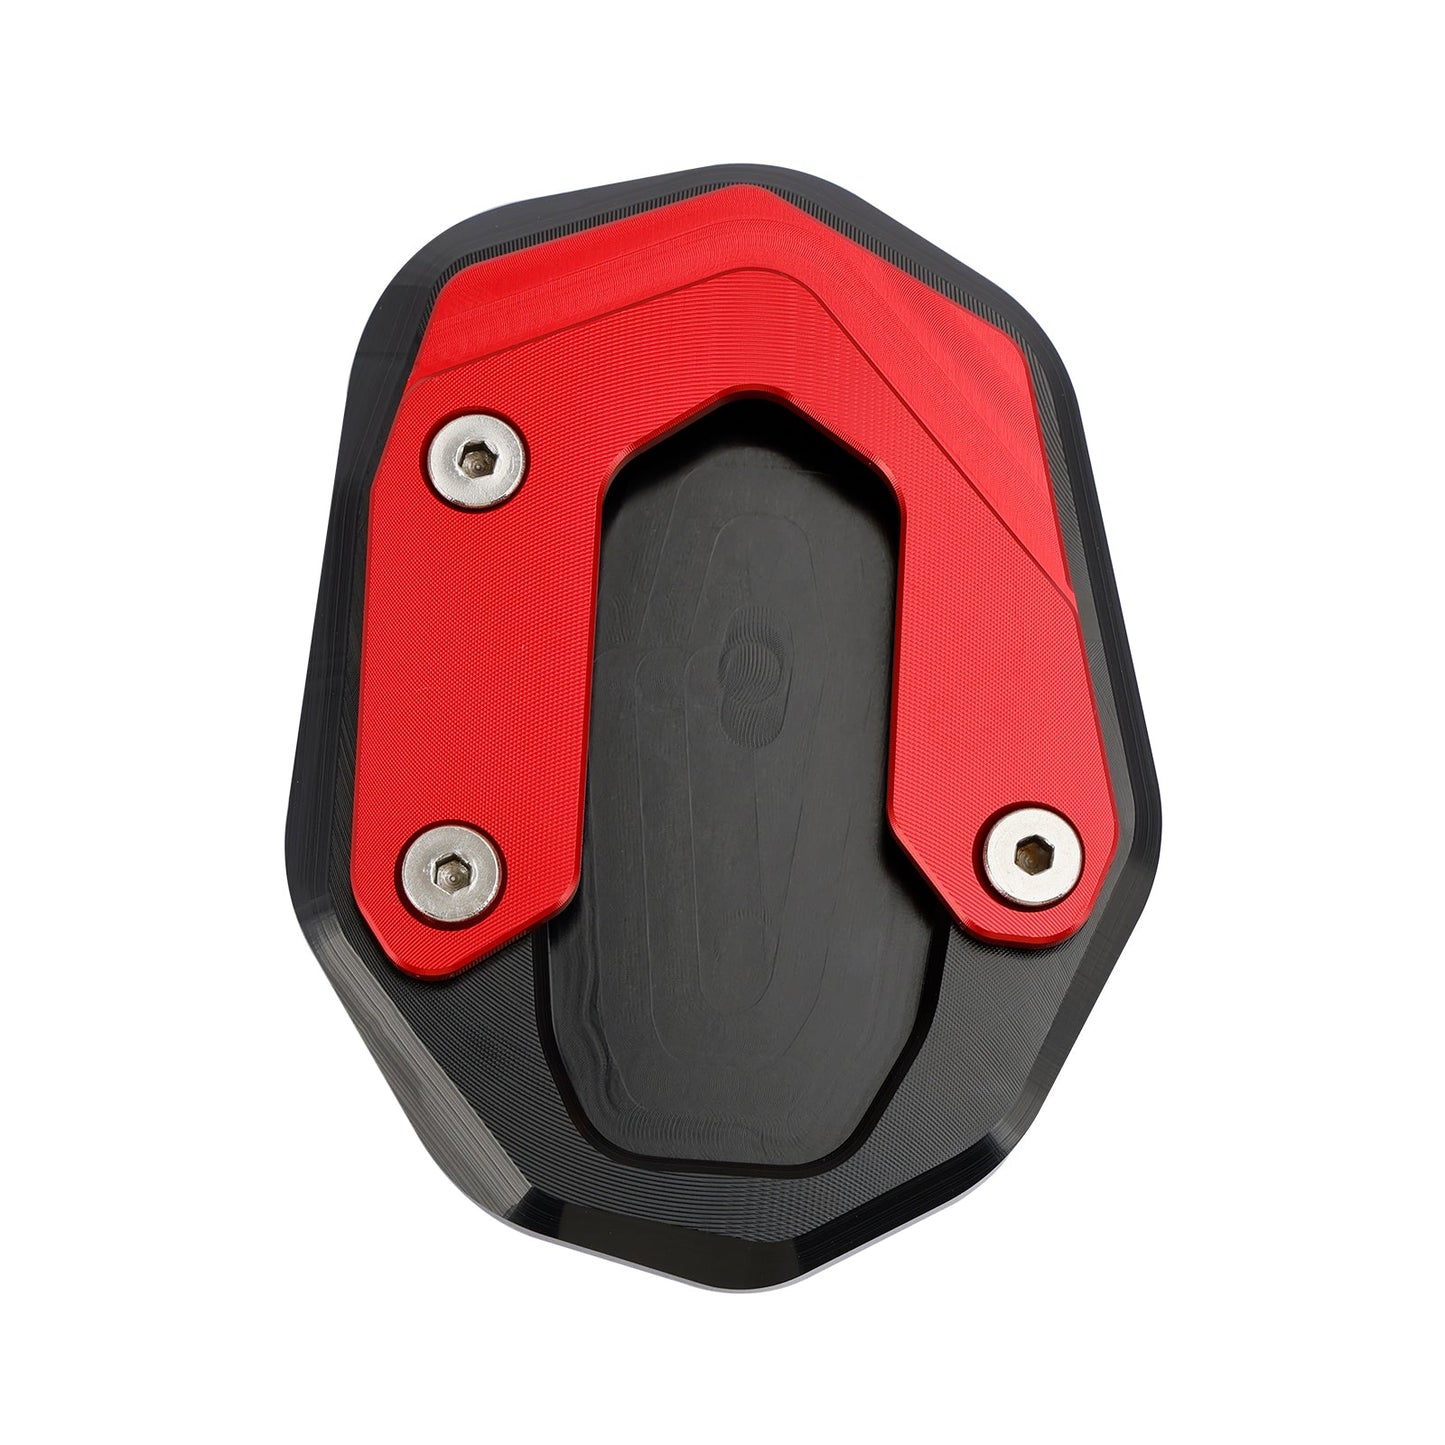 St?ndervergr??erungsplattenpolster passend für Ducati Scrambler 400/800/1100 2015-2020